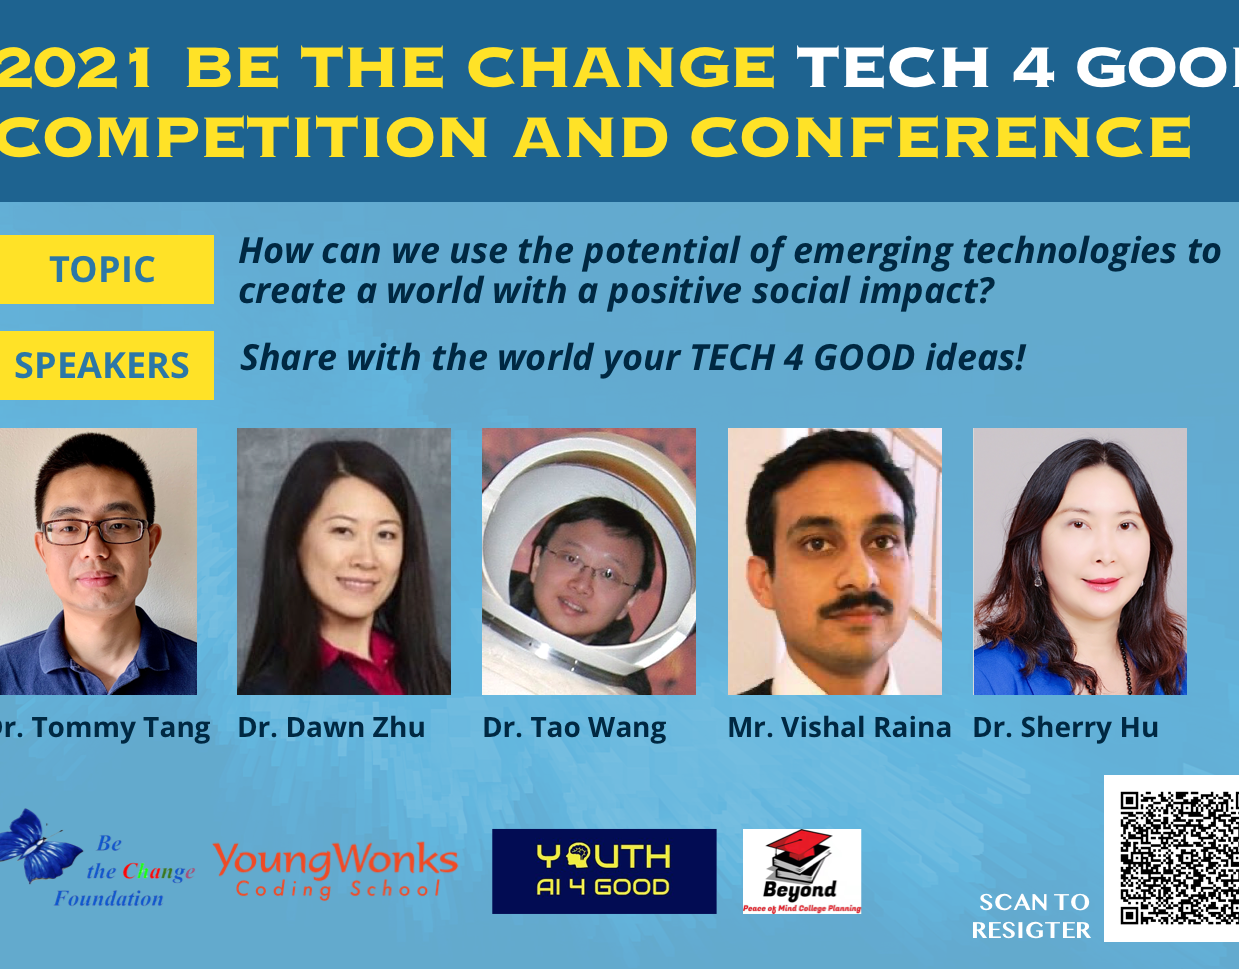 2021 BTC Tech 4 Good Conferences & Competitions